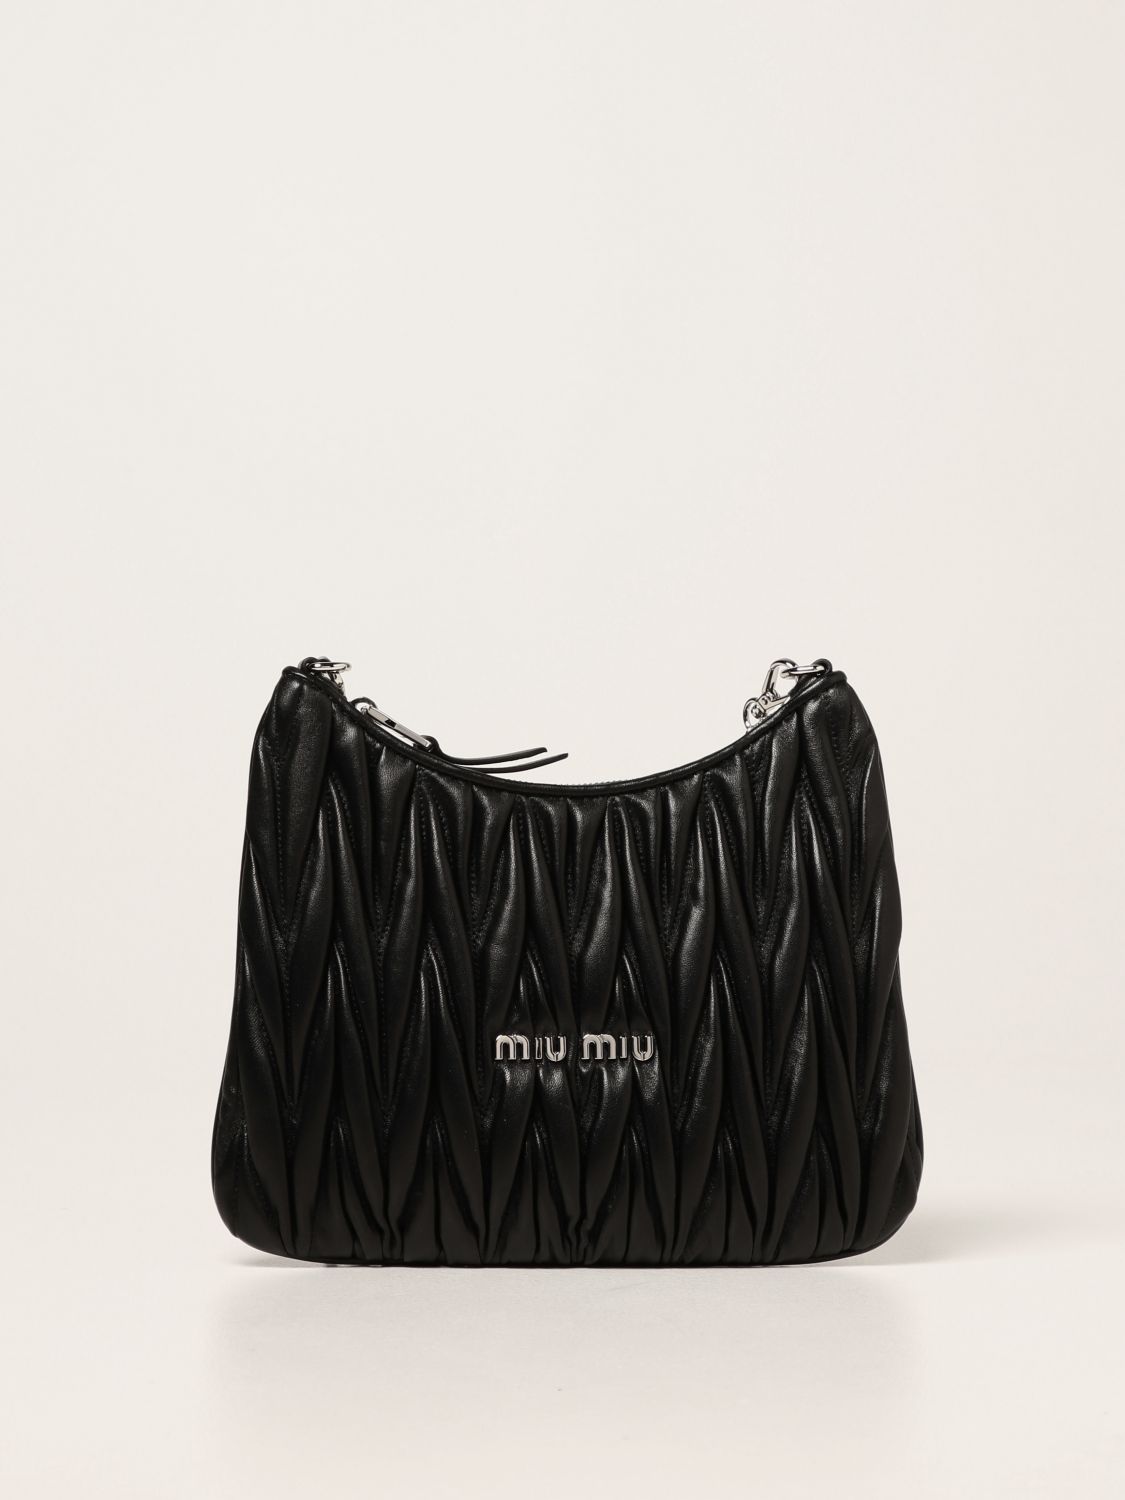 Miu Miu Women's 5BB054 Black Leather Handbag Shoulder Bag